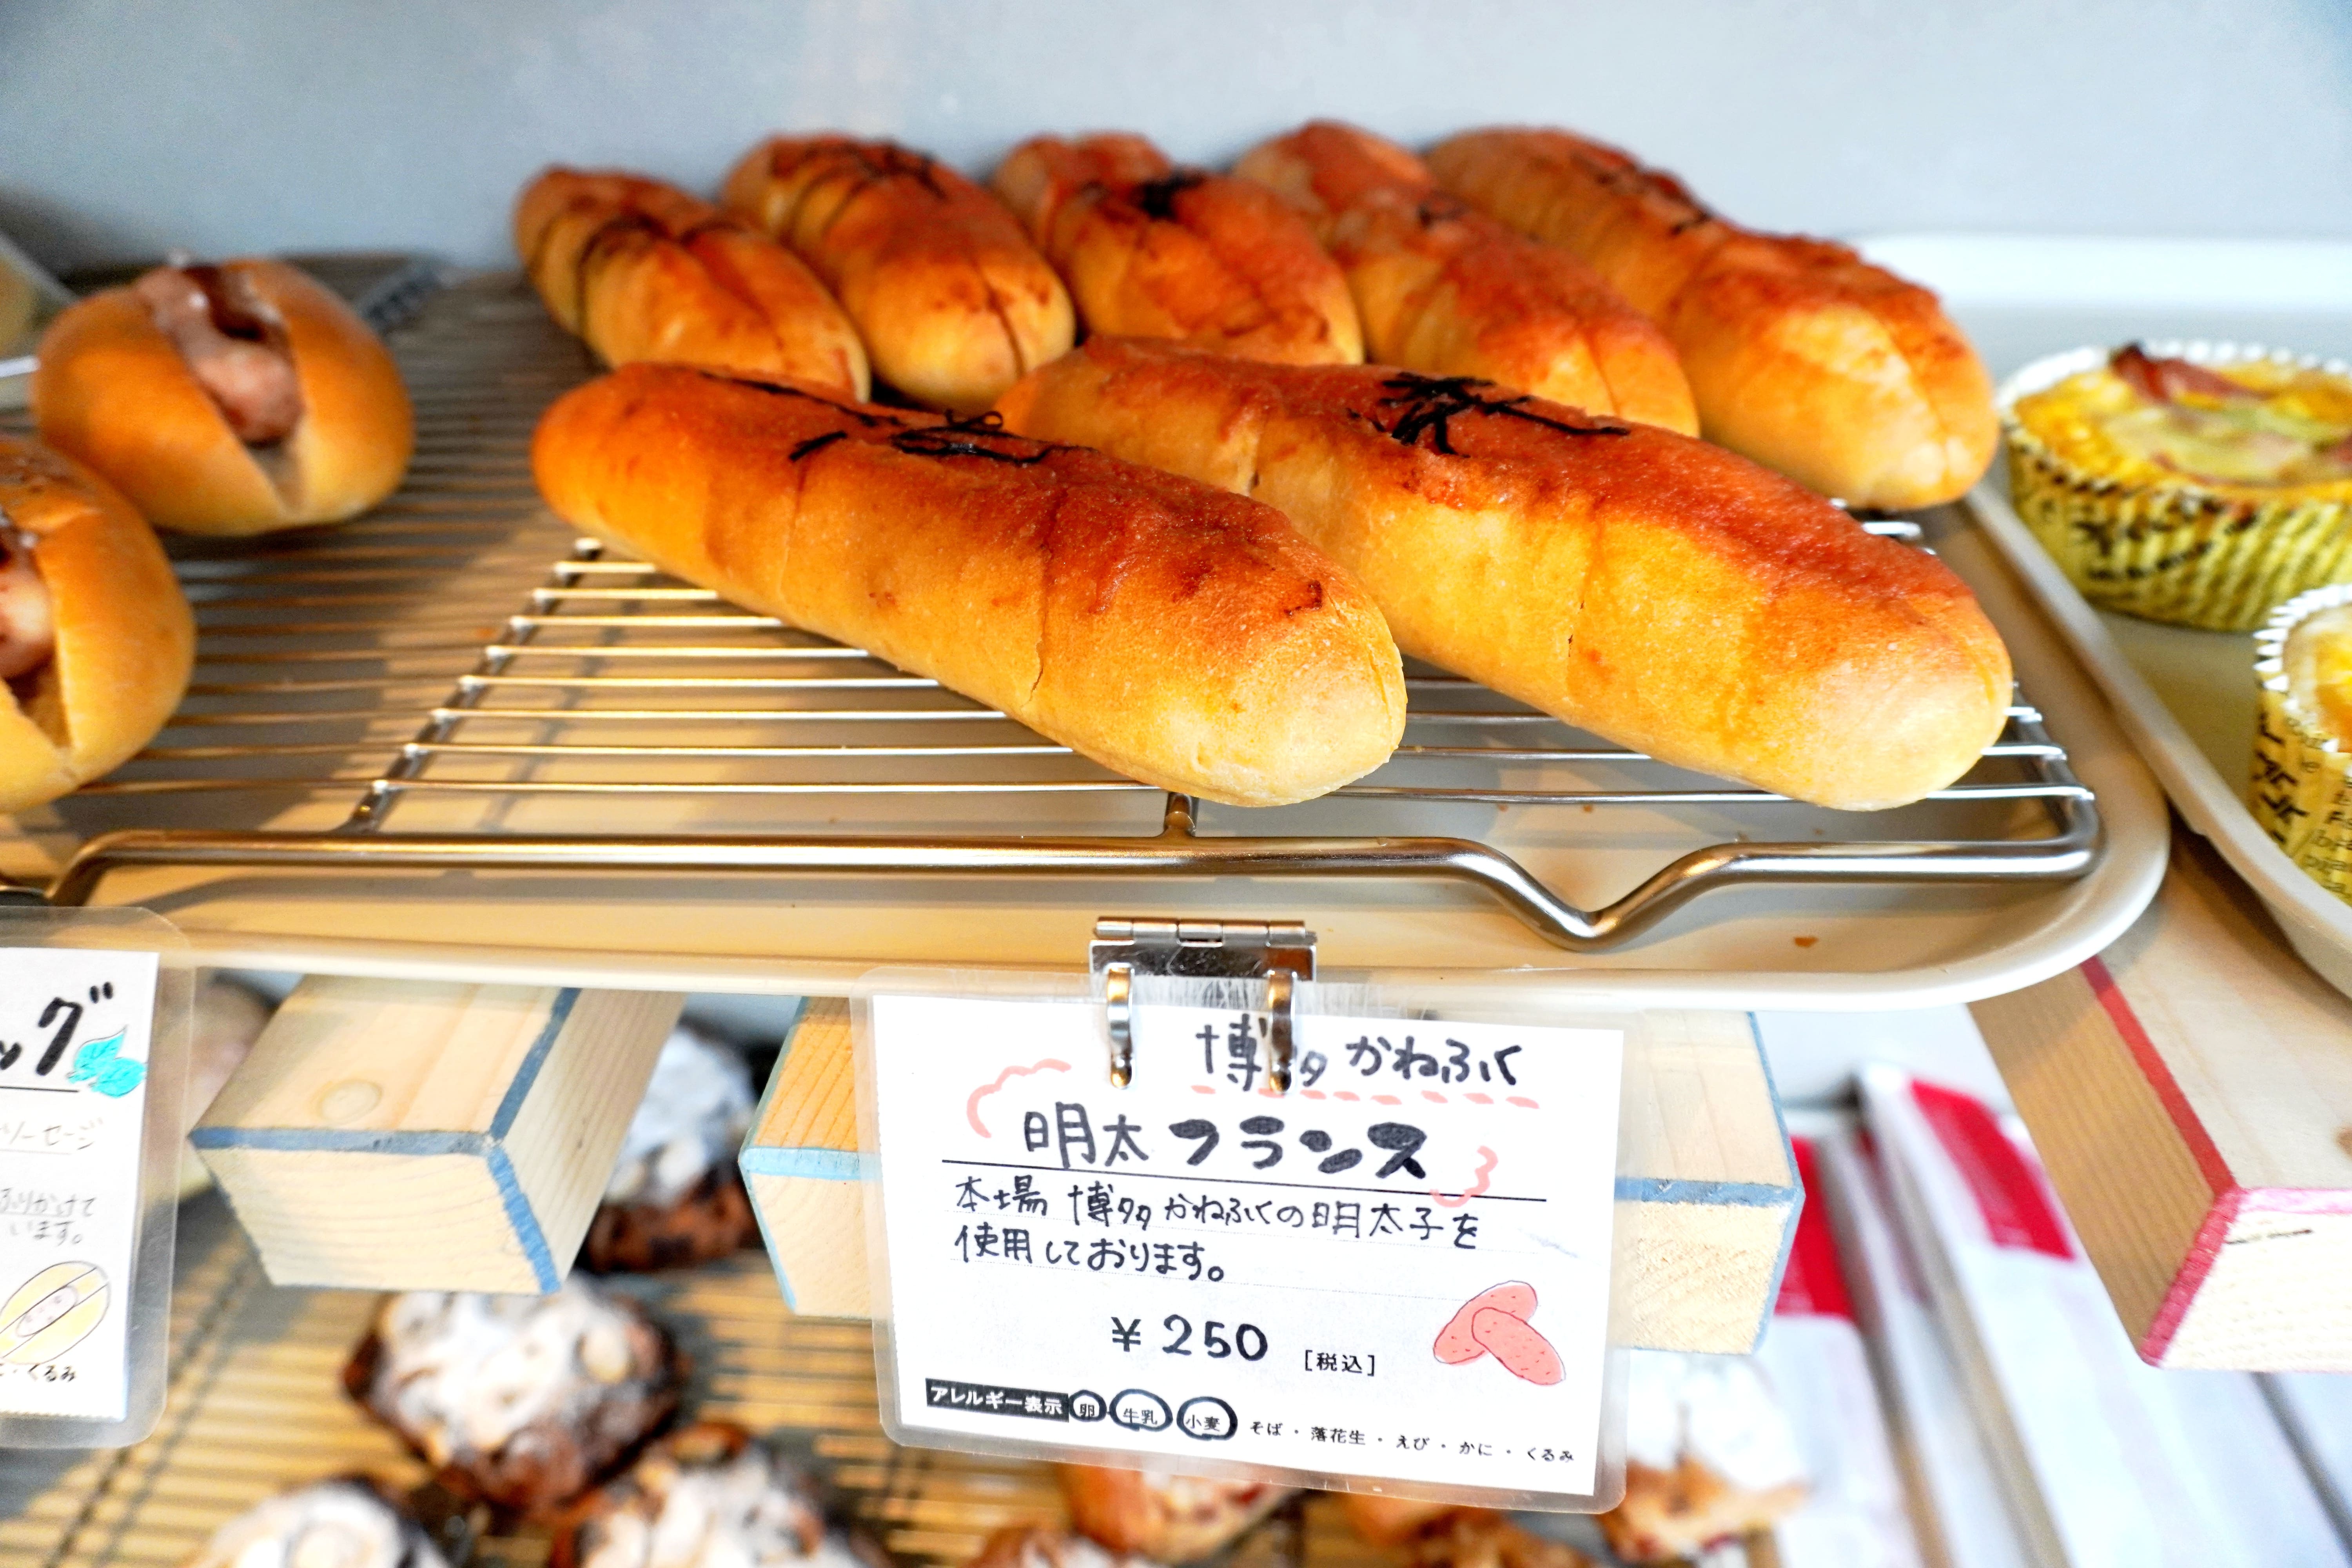 【横浜市・港南区】ワクワクするパン屋さん『キキベーカリー』に行ってきました。